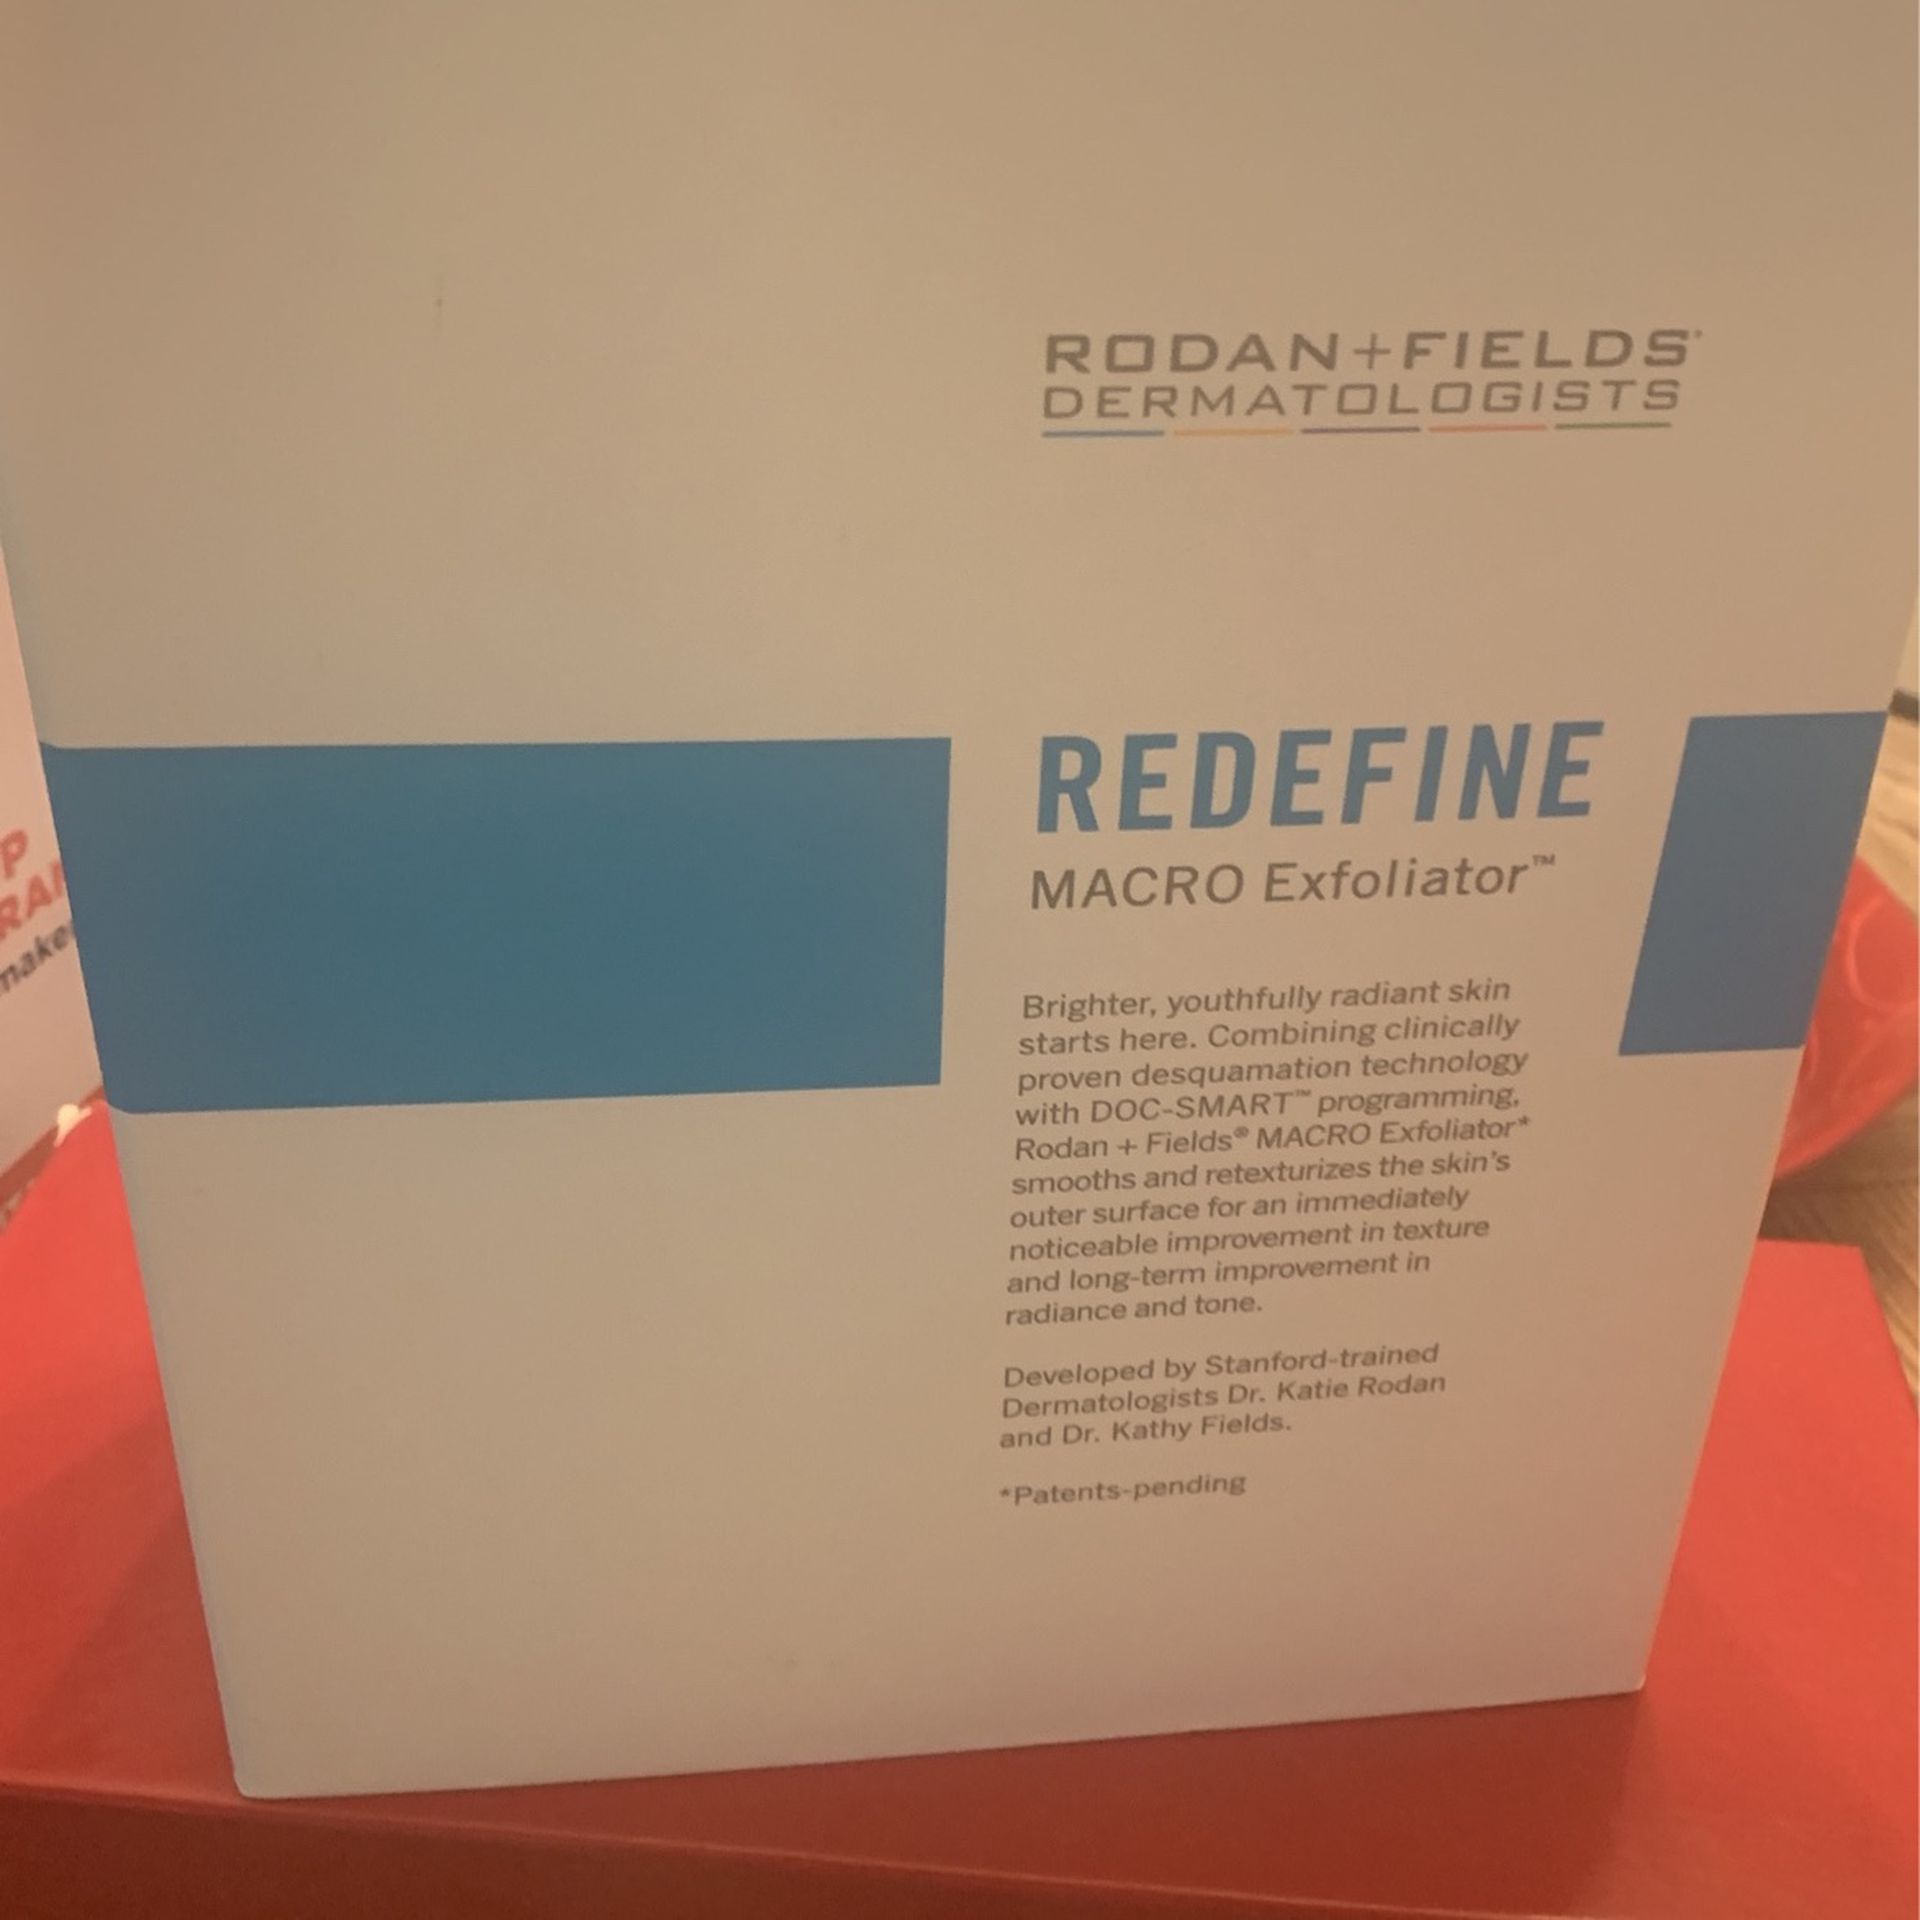 Rodman & Fields Redefine Macro Exfoliator